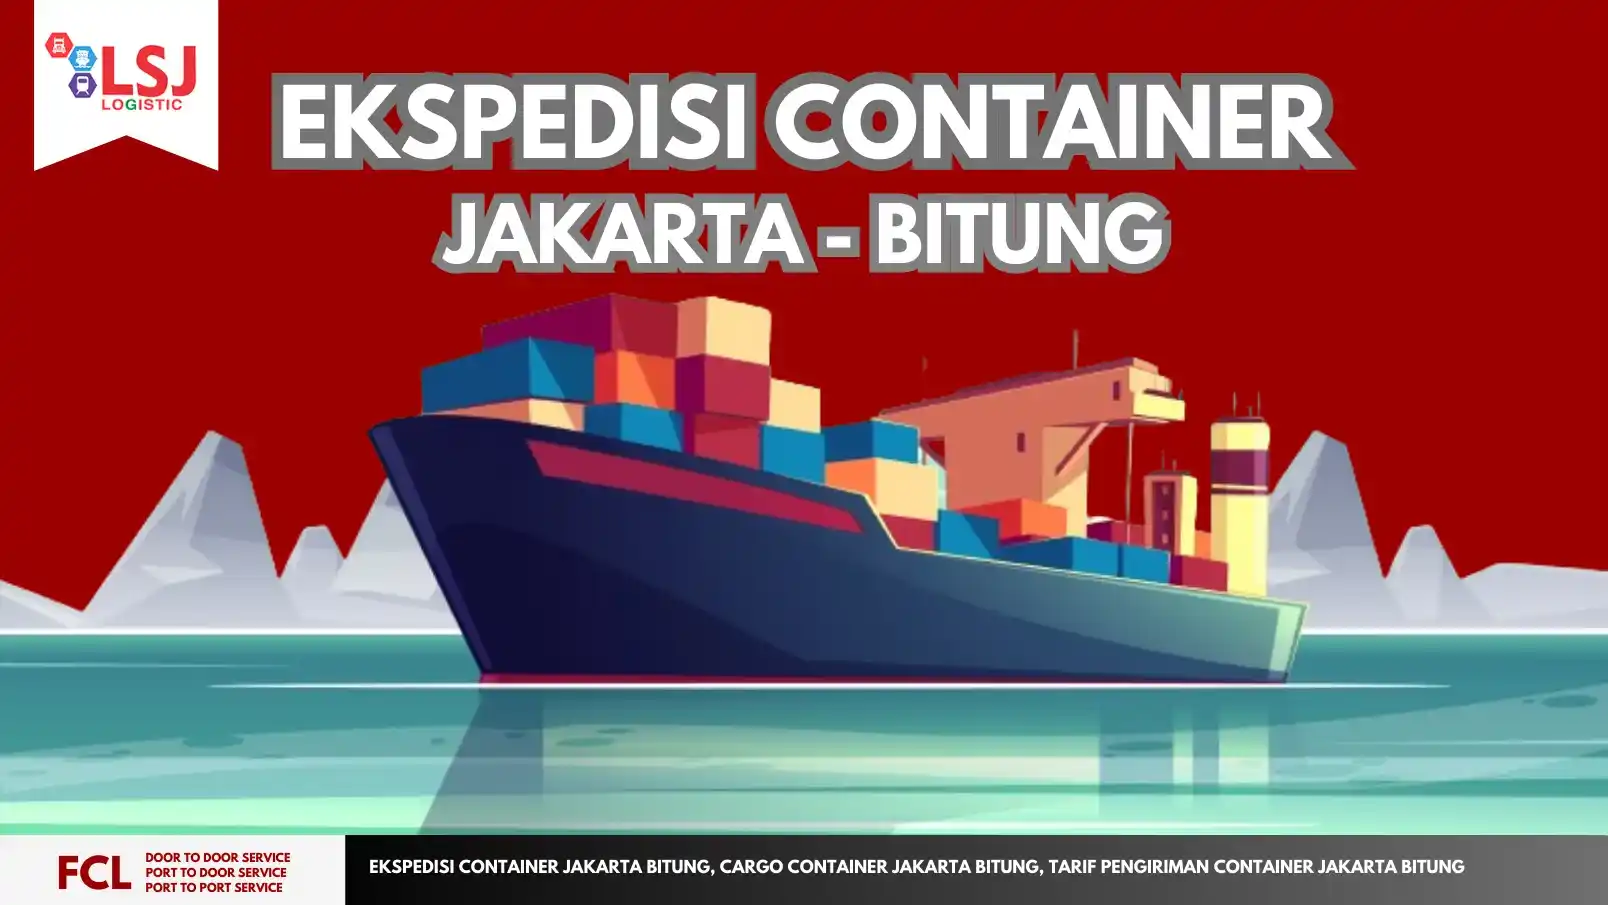 Jasa Pengiriman Container Bitung Jakarta